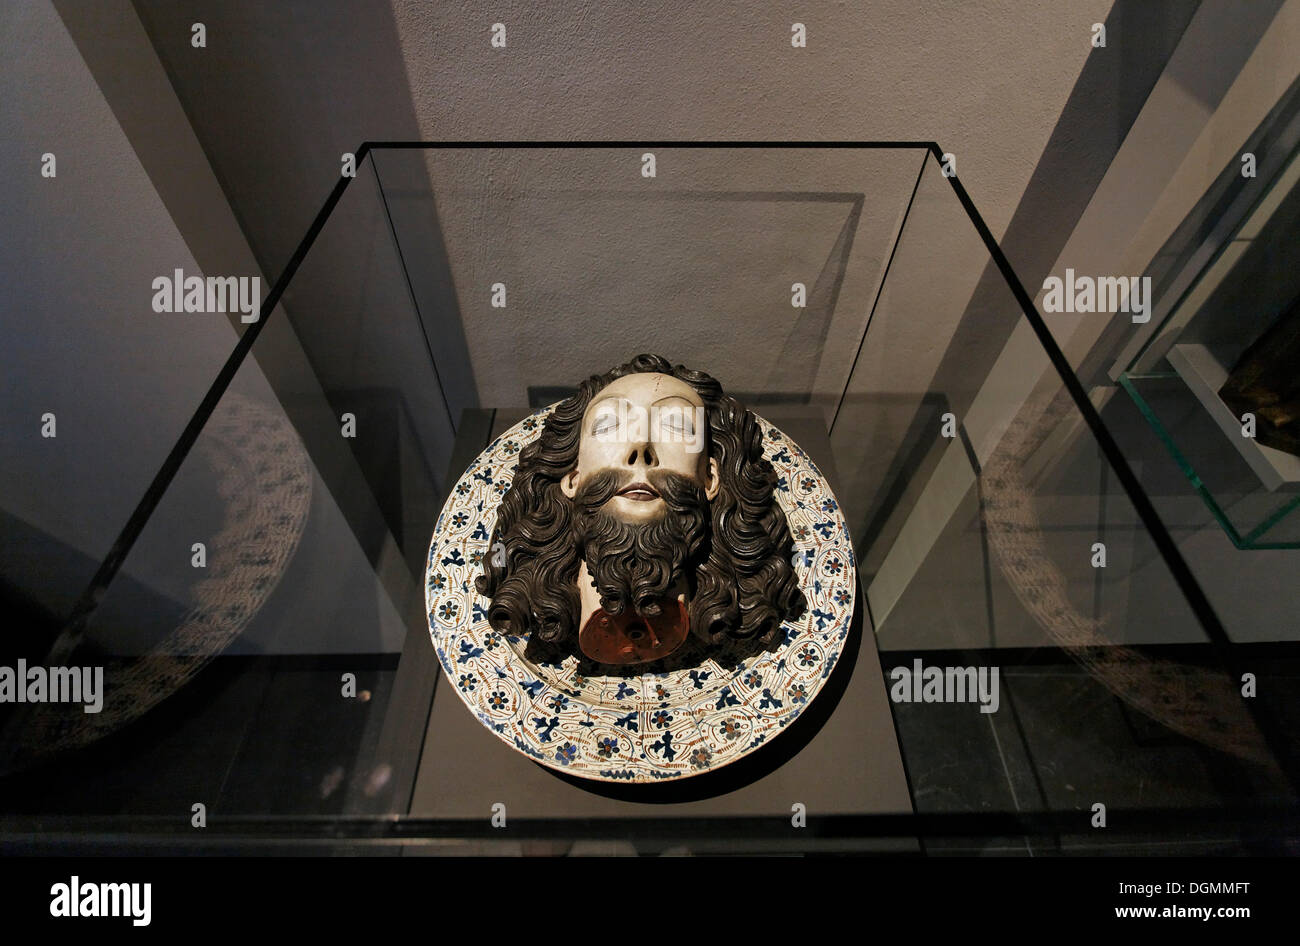 Cabeza cortada de Juan el Bautista acostado sobre una placa, escultura en madera, Stiftsmuseum museo museo del monasterio de Xanten, Xanten Foto de stock